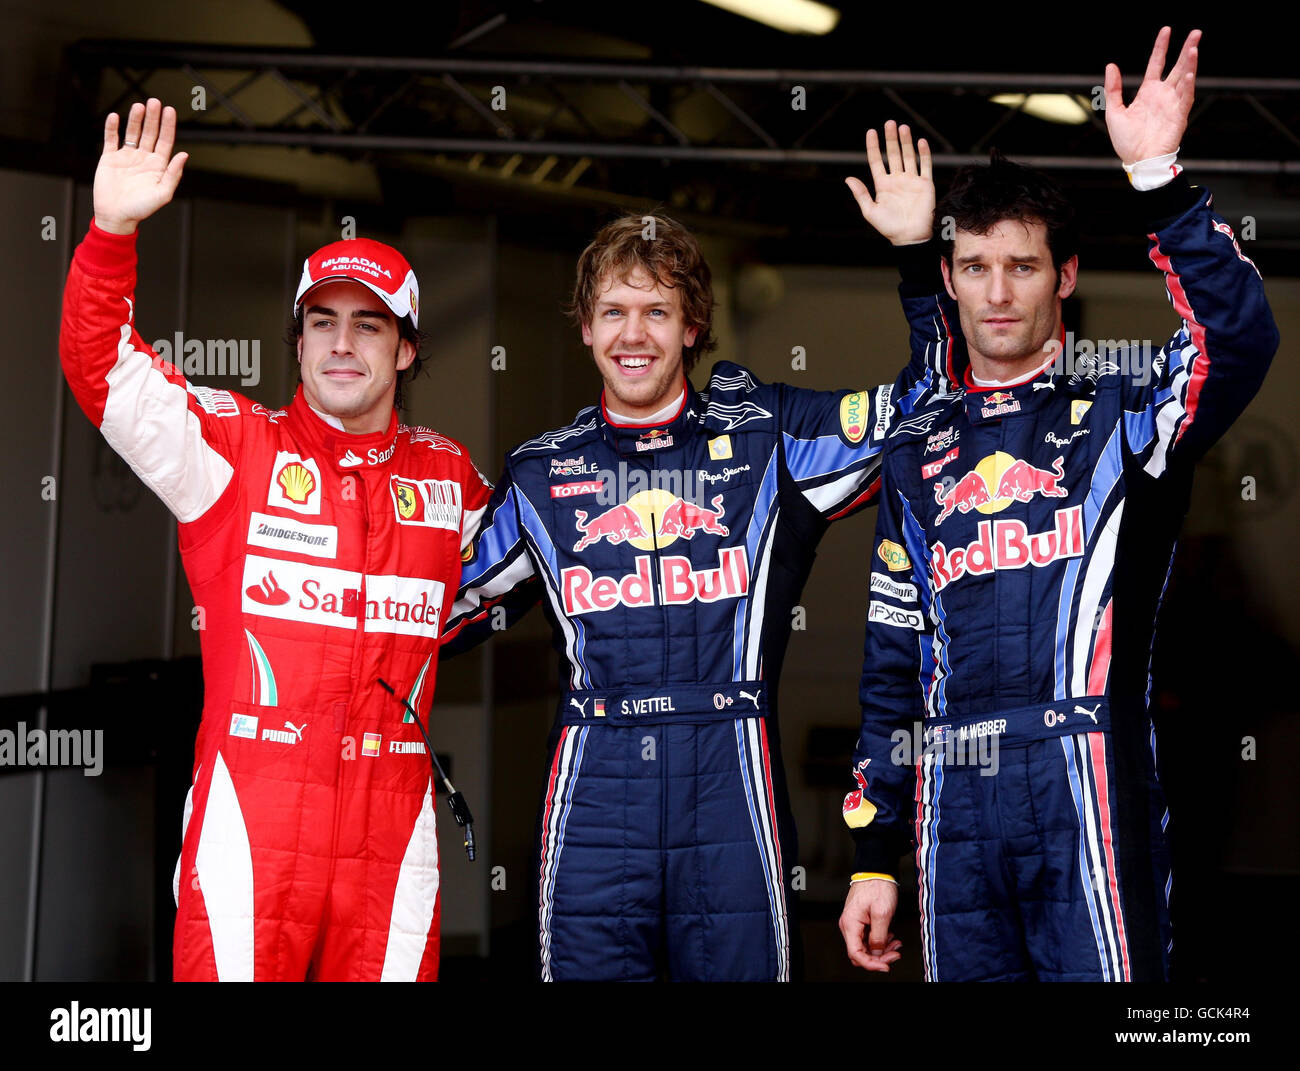 Sebastian Vettel (centro), de Red Bull Racing, celebra su posición de polo  con Mark Webber (derecha), segundo compañero de equipo, y Fernando Alonso,  tercero de Ferarri, el día de clasificación por delante